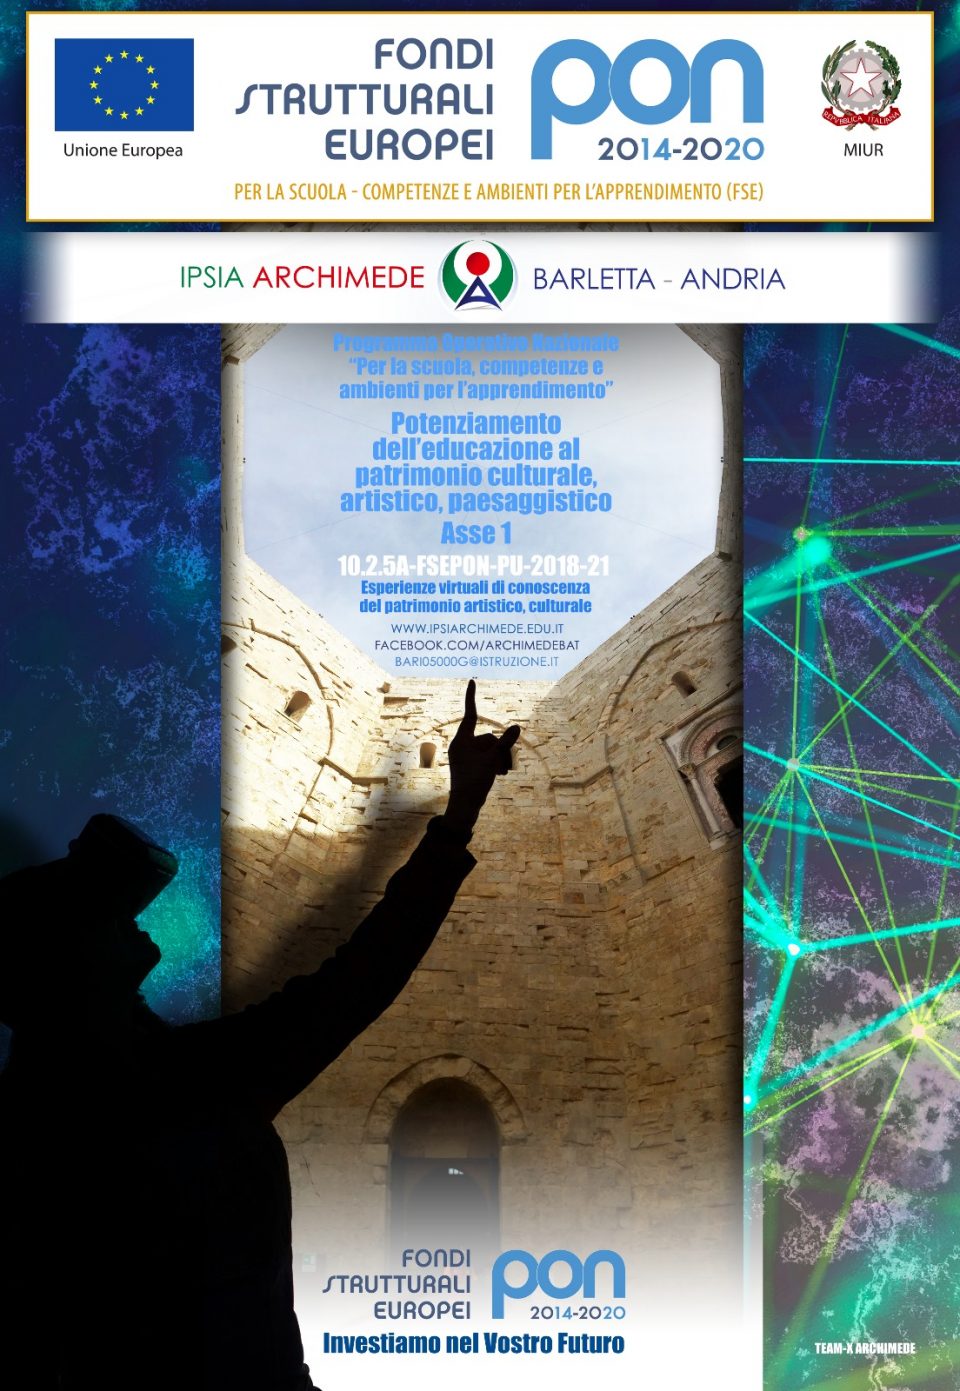 IPSIA ARCHIMEDE BARLETTA e il Patrimonio Culturale e Artistico con il PON "Esperienze virtuali di conoscenza del patrimonio artistico, culturale".